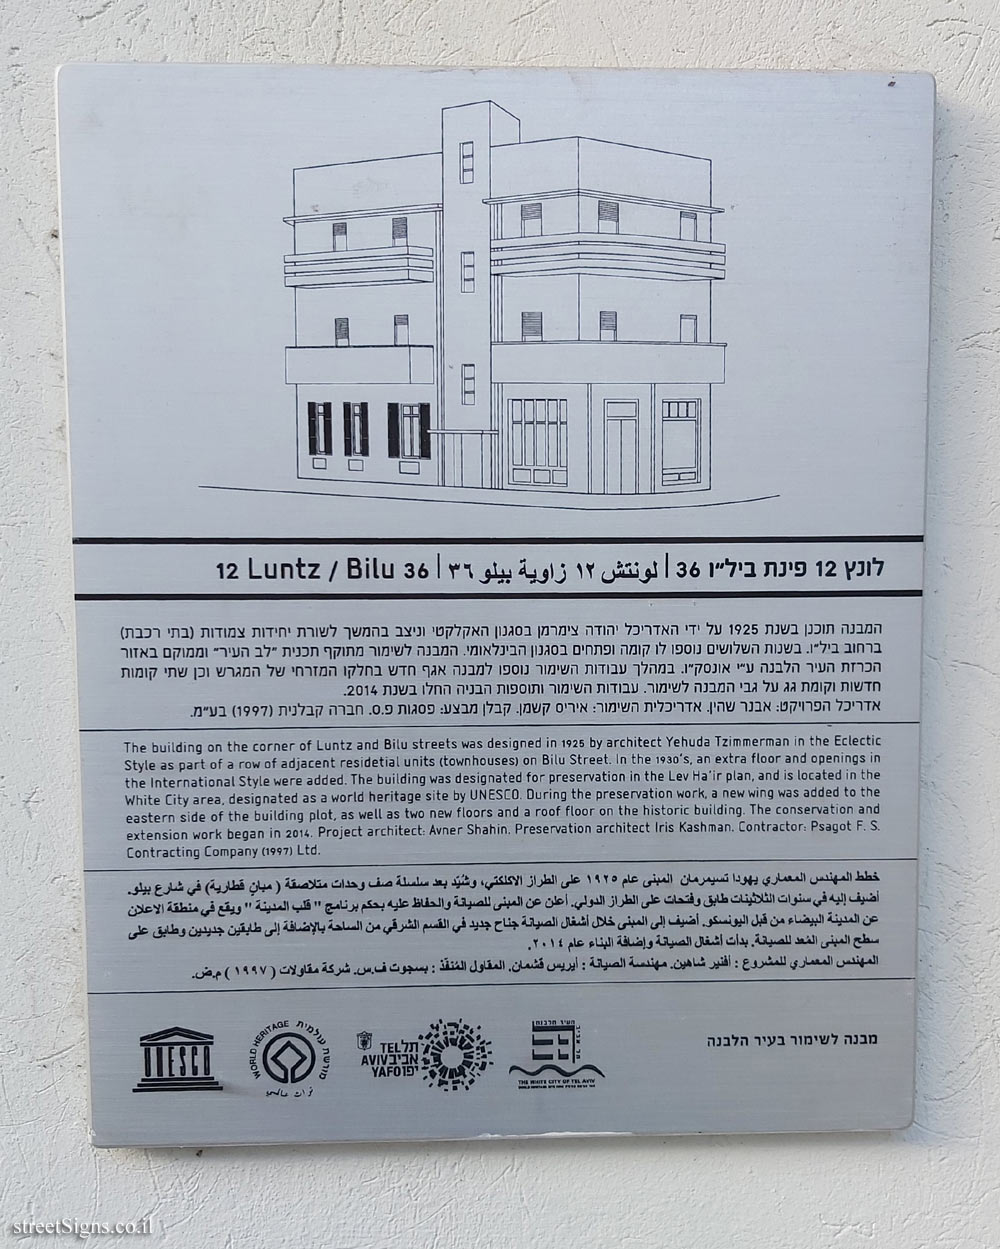 Tel Aviv - buildings for conservation - 12 Lunz / Bilu 36